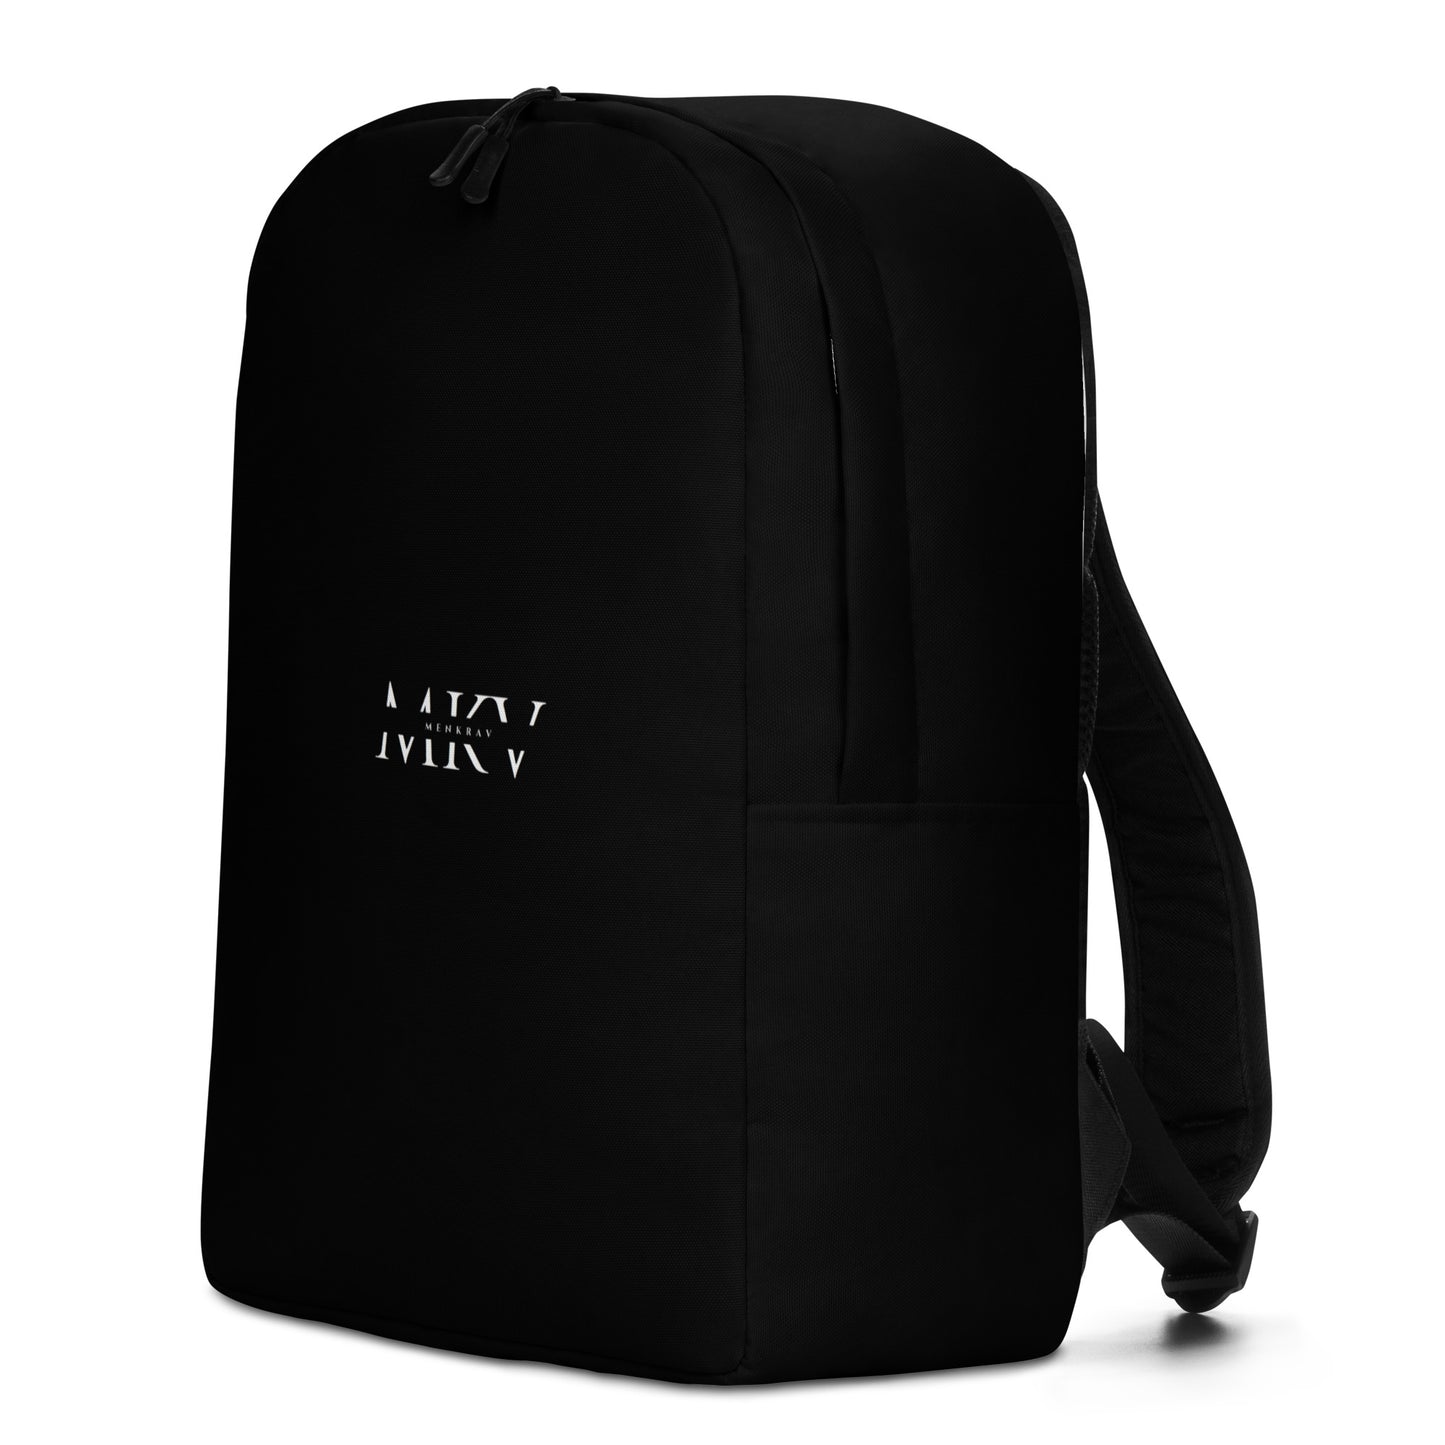 Menkrav Initiate backpack black